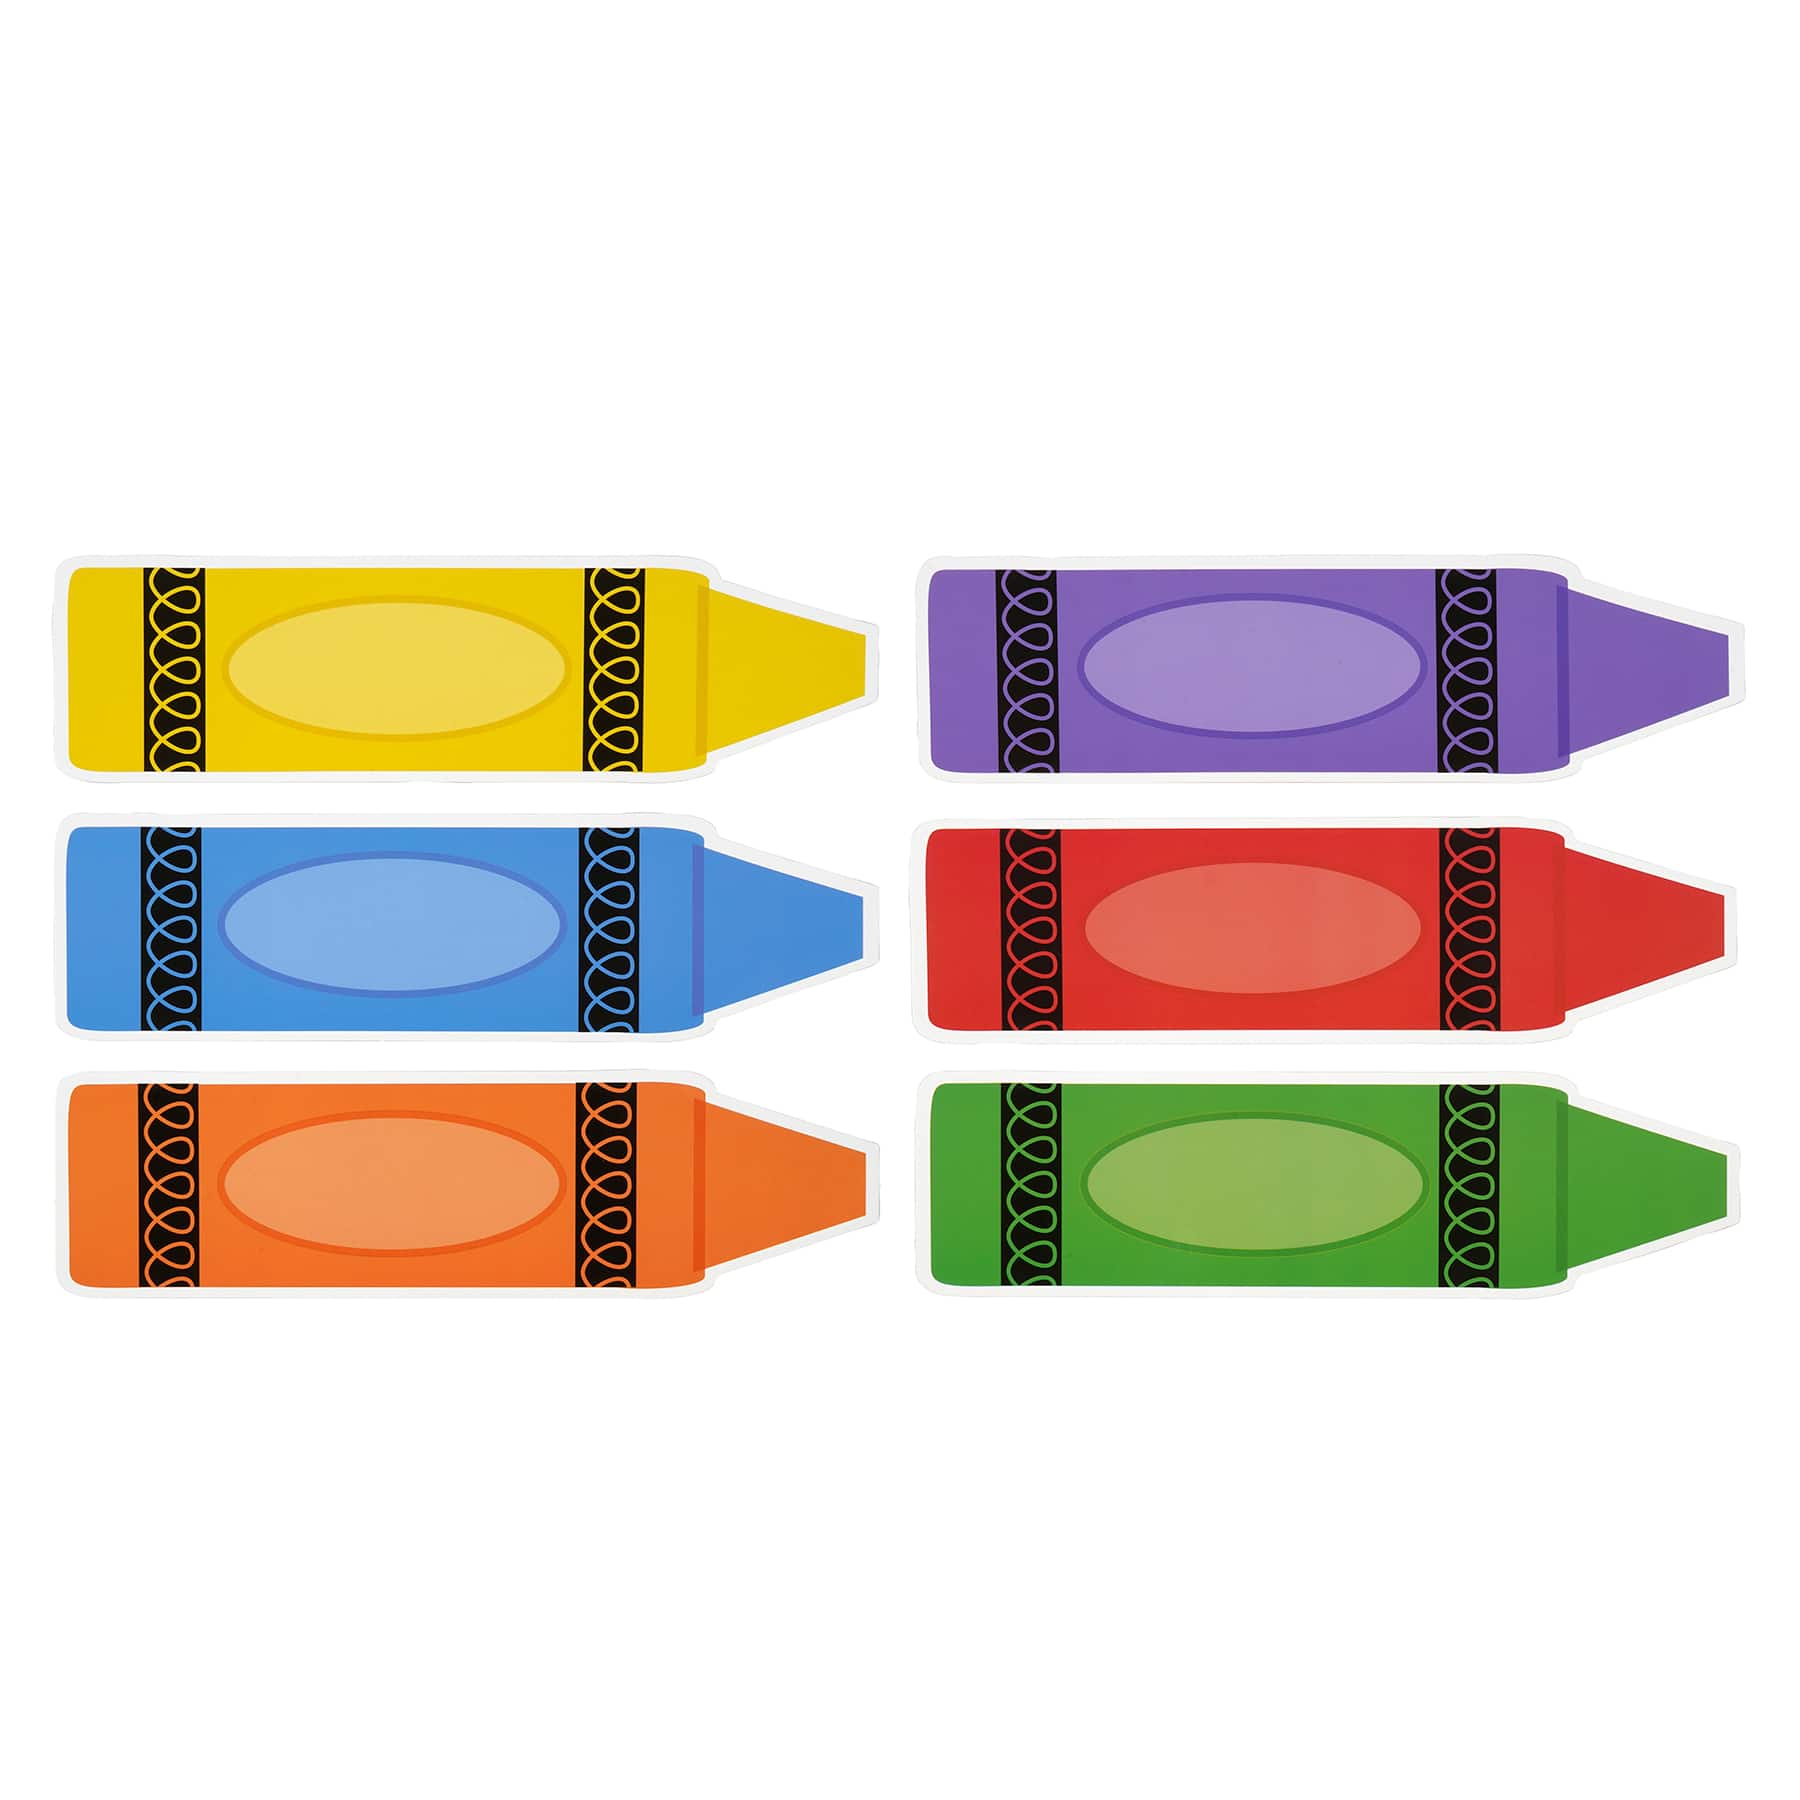 Crayon DIY Magnets & Desk Name Plates, Crafts